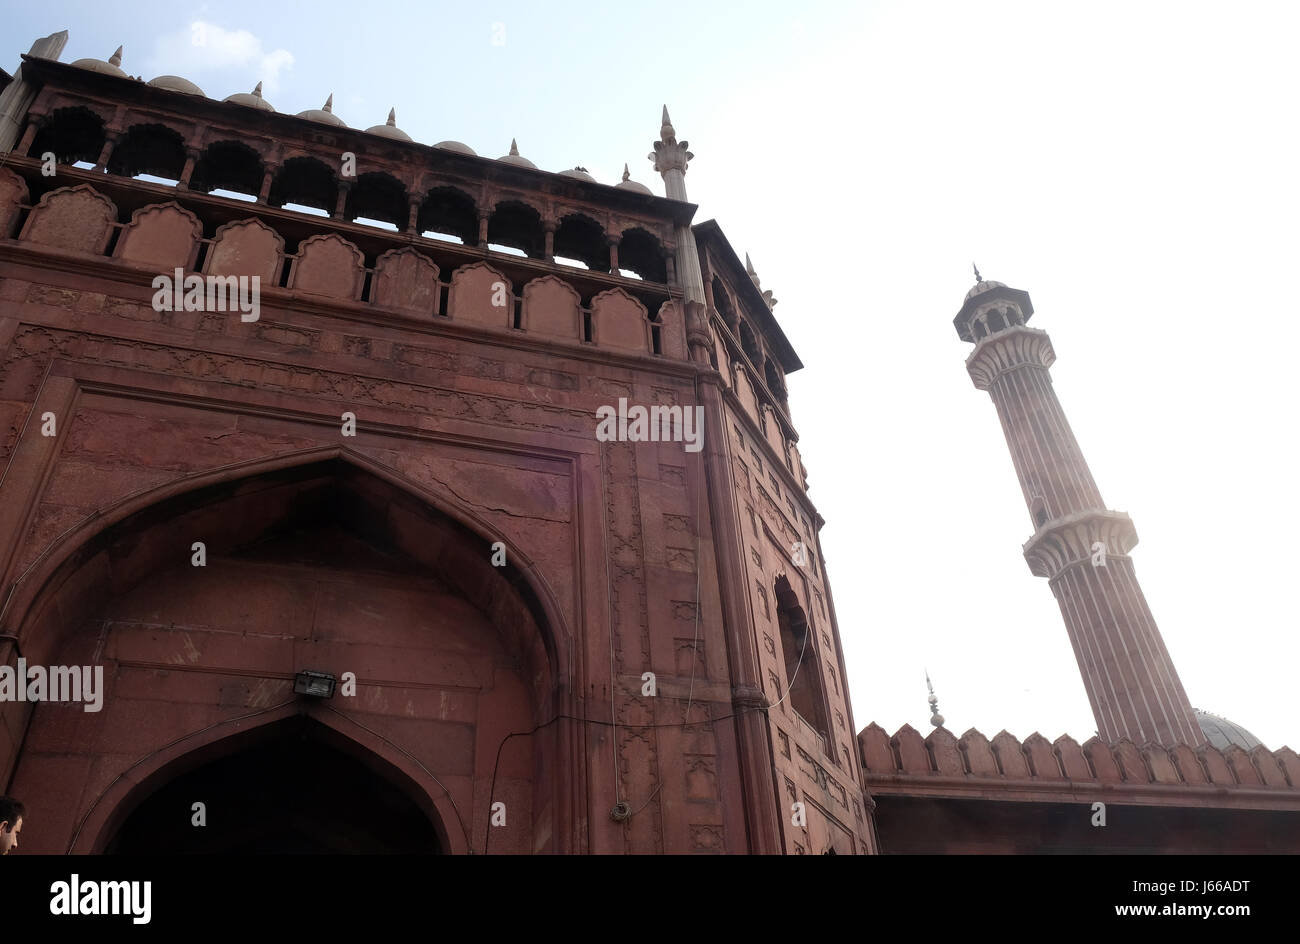 L'architecture spectaculaire de la grande mosquée de vendredi (Jama Masjid), Février 13, 2016, Delhi, Inde. Banque D'Images